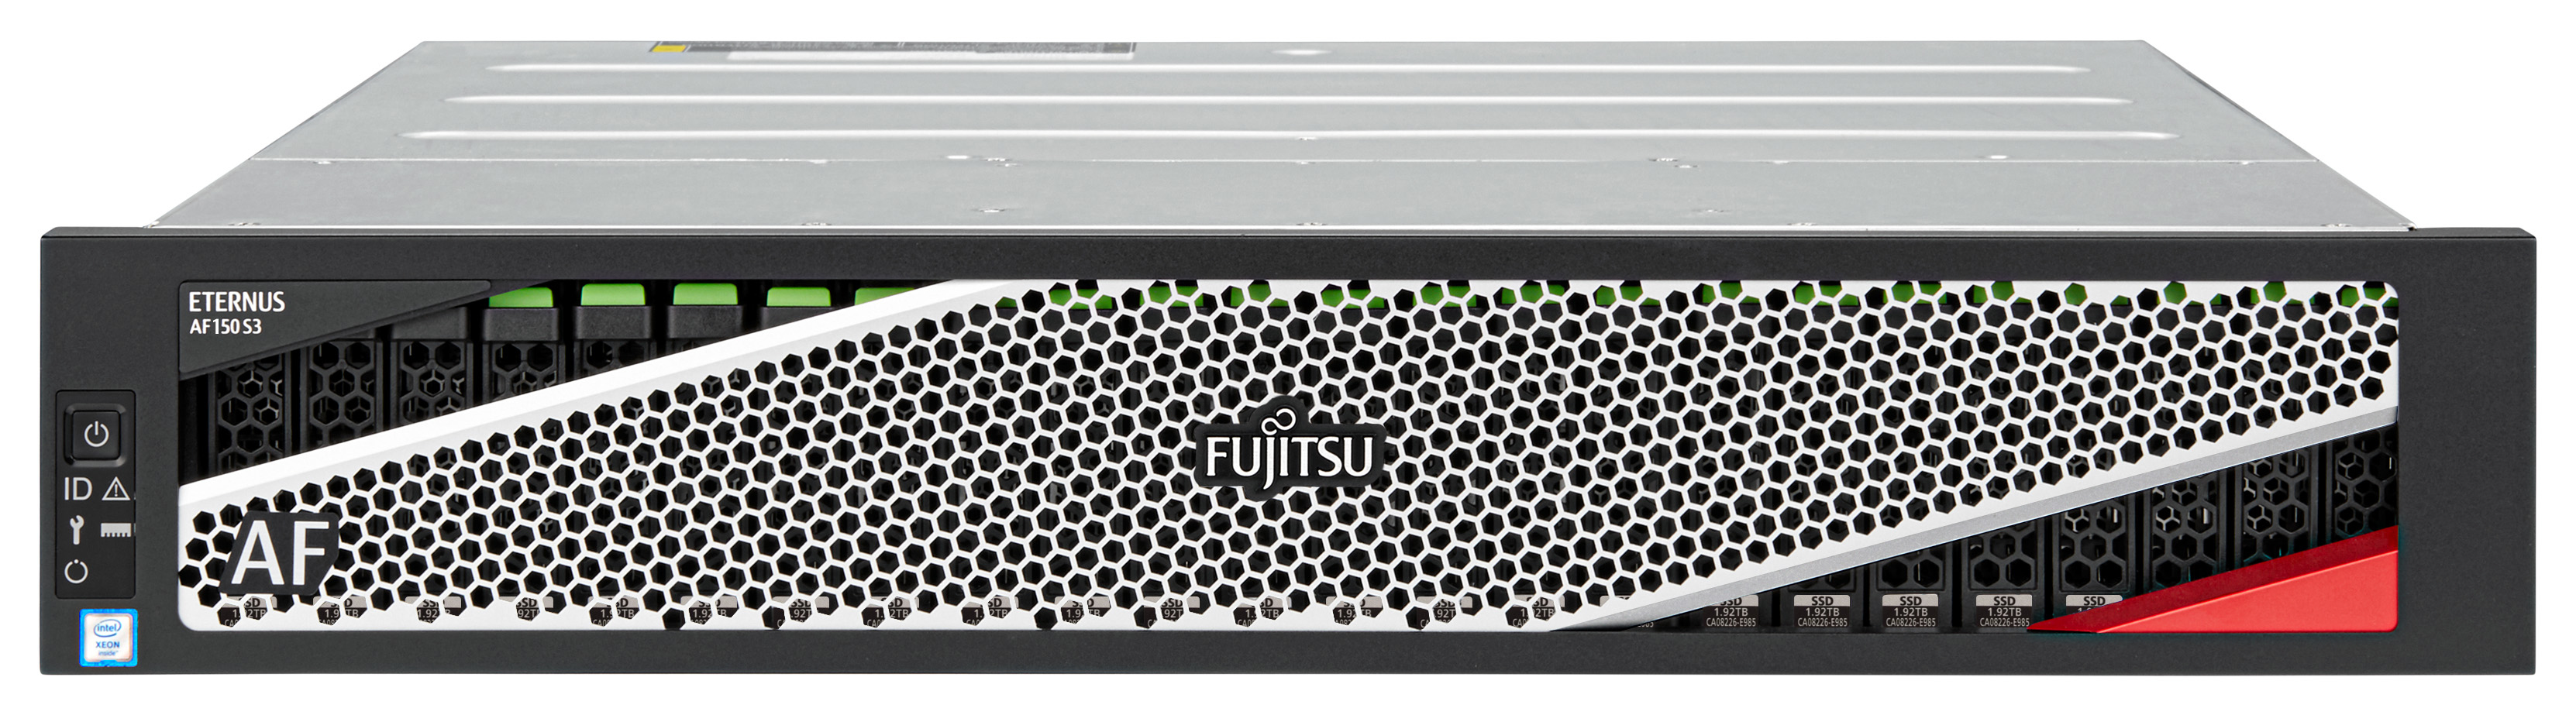 Fujitsu ETERNUS AF 150 S3 - Solid State Drive Array - 3.84 TB - 24 Schächte (SAS-3)